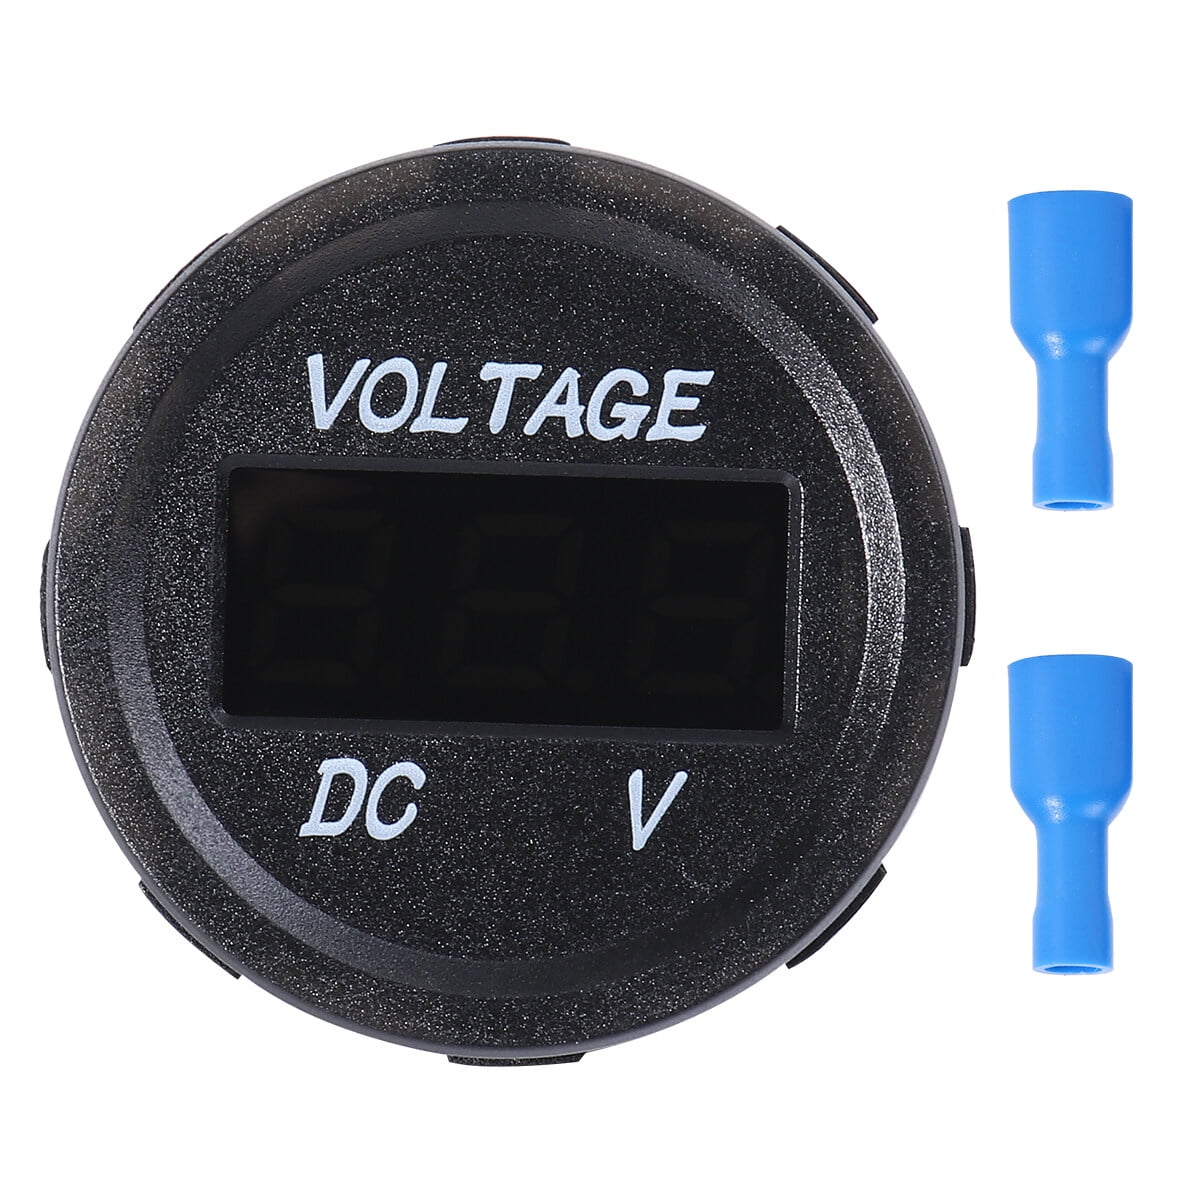  DC Multifunction Battery Monitor Meter, 6.5-100V, 0-100A  (Widely Applied to 12V/24V/48V RV/Car Battery) LCD Display Digital Current  Voltage Solar Power Meter Multimeter Voltmeter Ammeter : Automotive